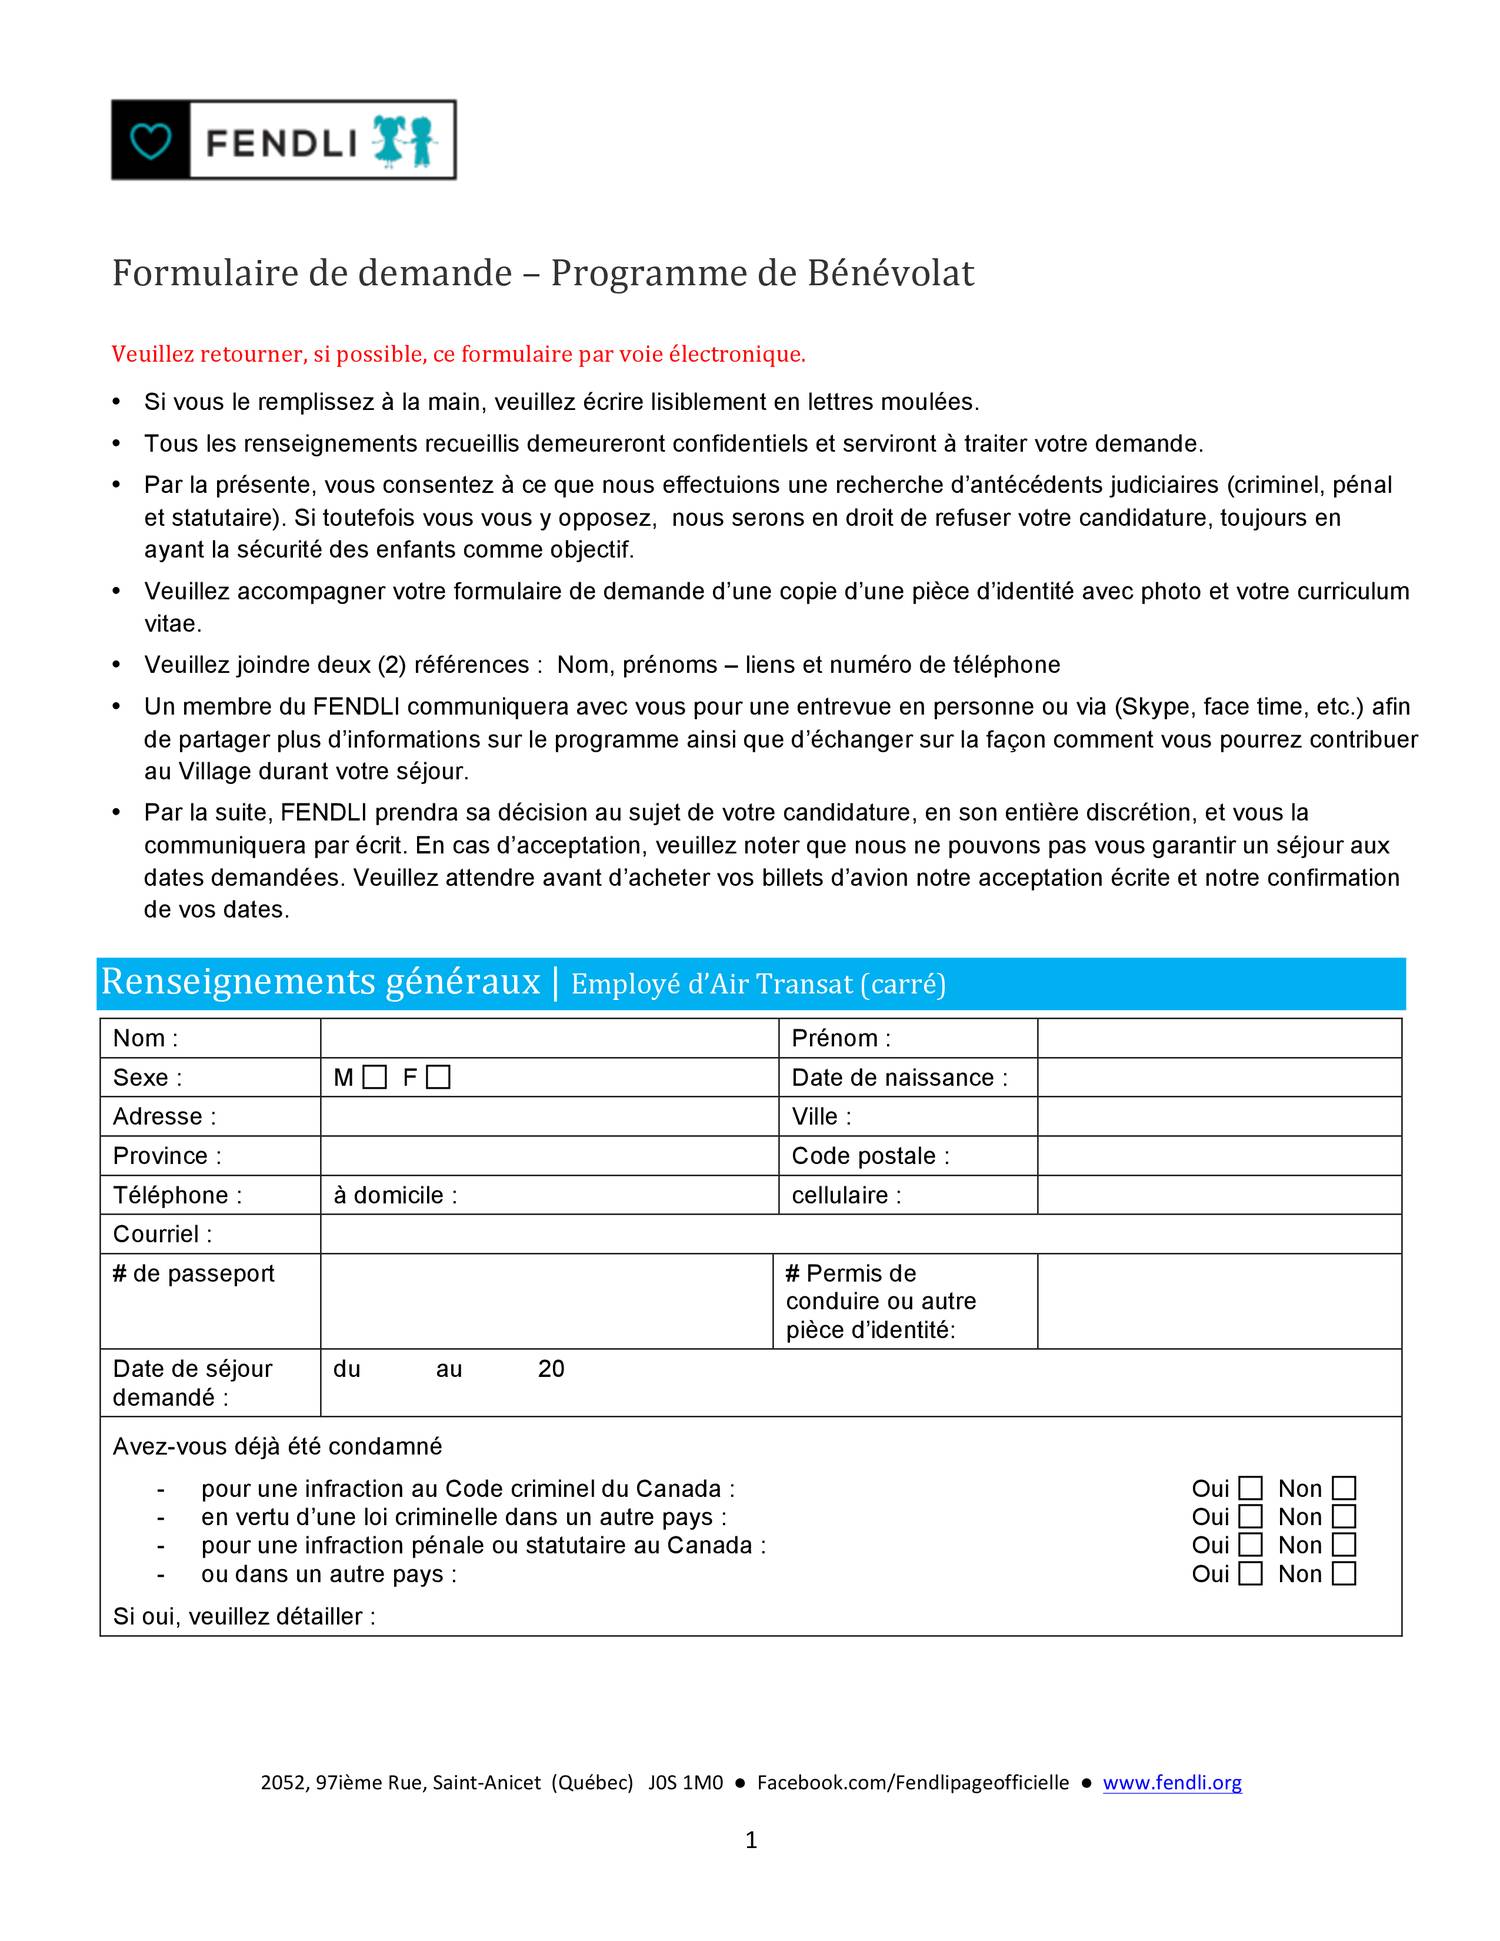 3  Formulaire de demande docx  copie.pdf  DocDroid